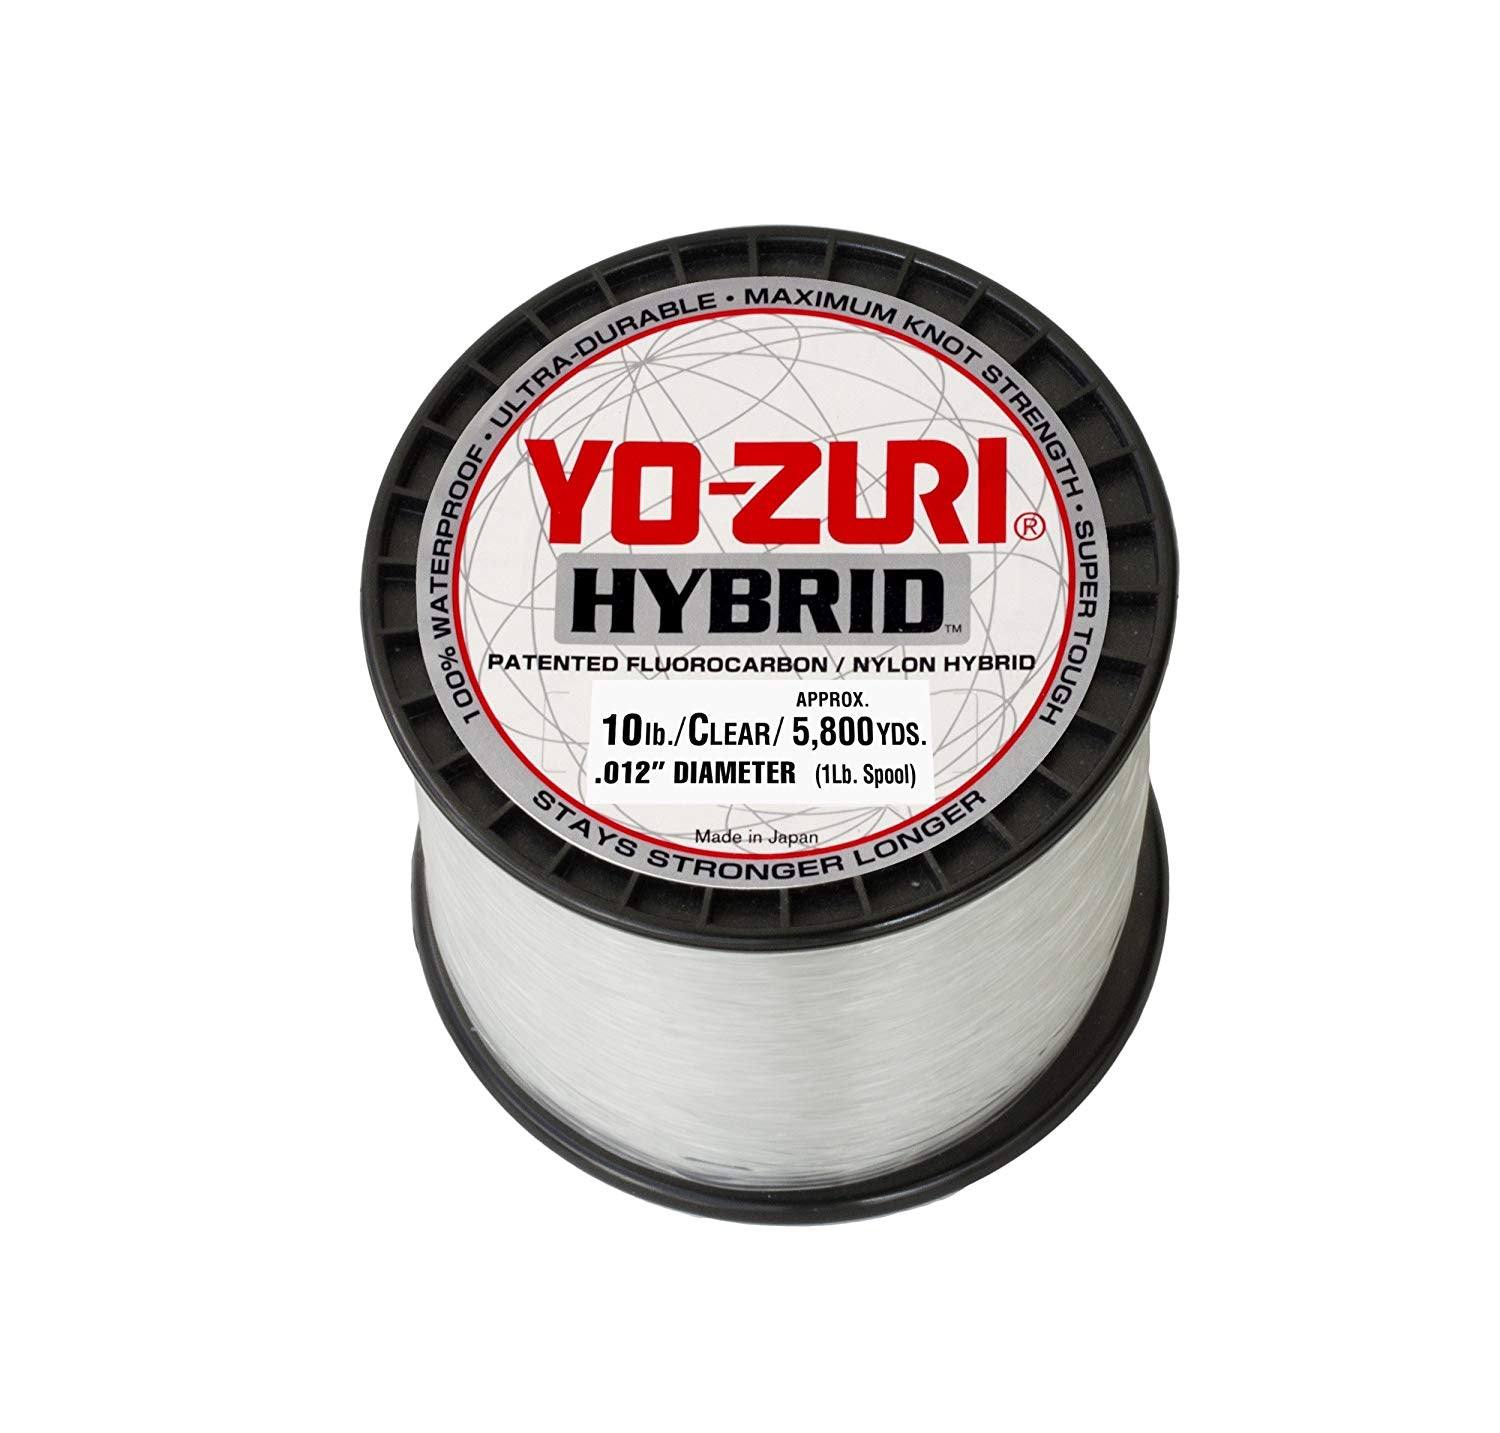 Yo-Zuri Hybrid Fluorocarbon Main Line Fishing Line, 10lb, 5800yd, Clear